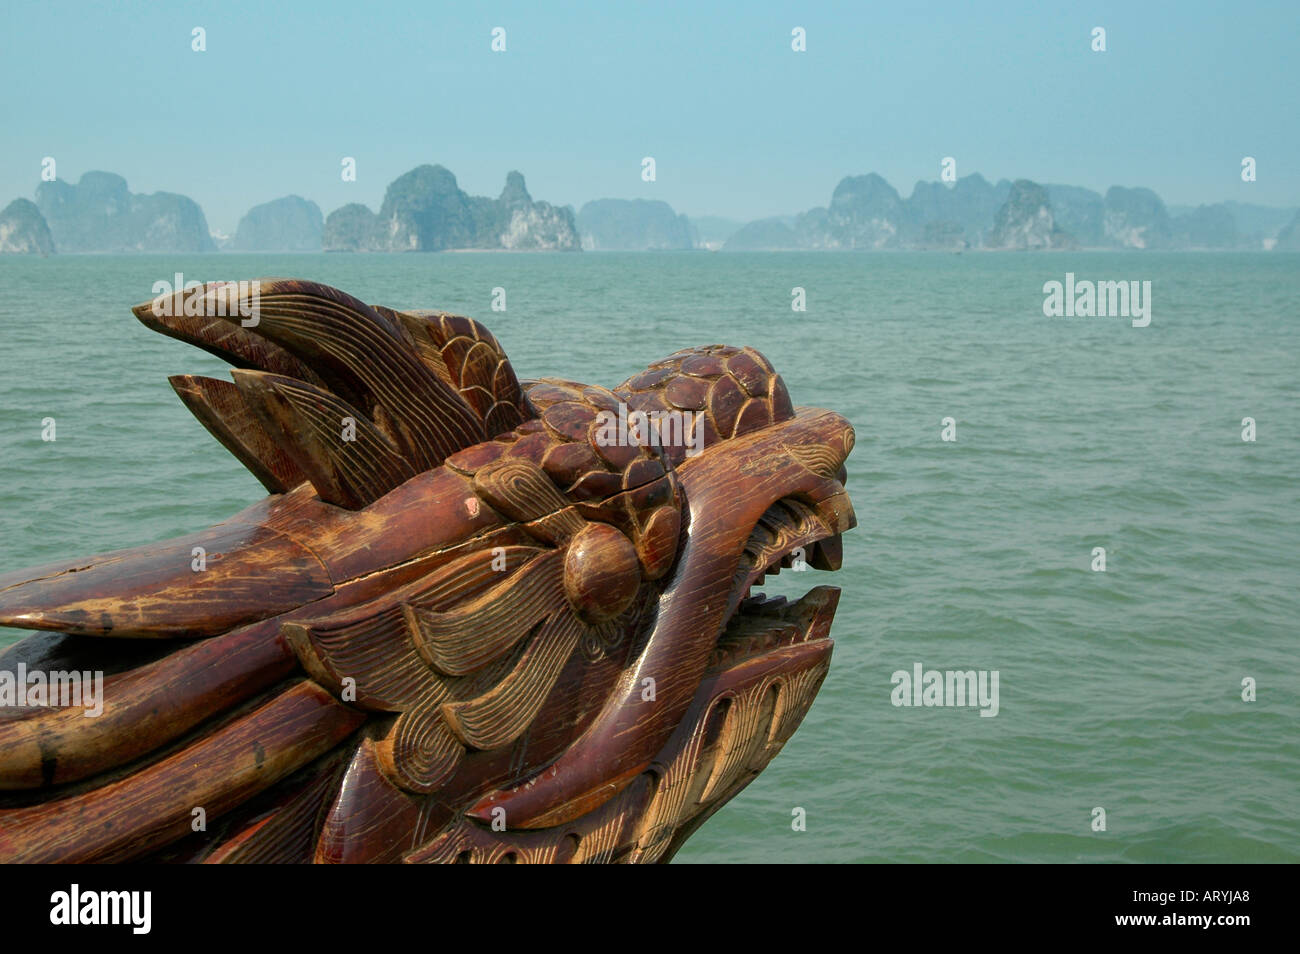 Un dragone in legno prua guardando alla baia di Halong con le sue 3000 isole e isolette di carbonifero chalk. Foto Stock